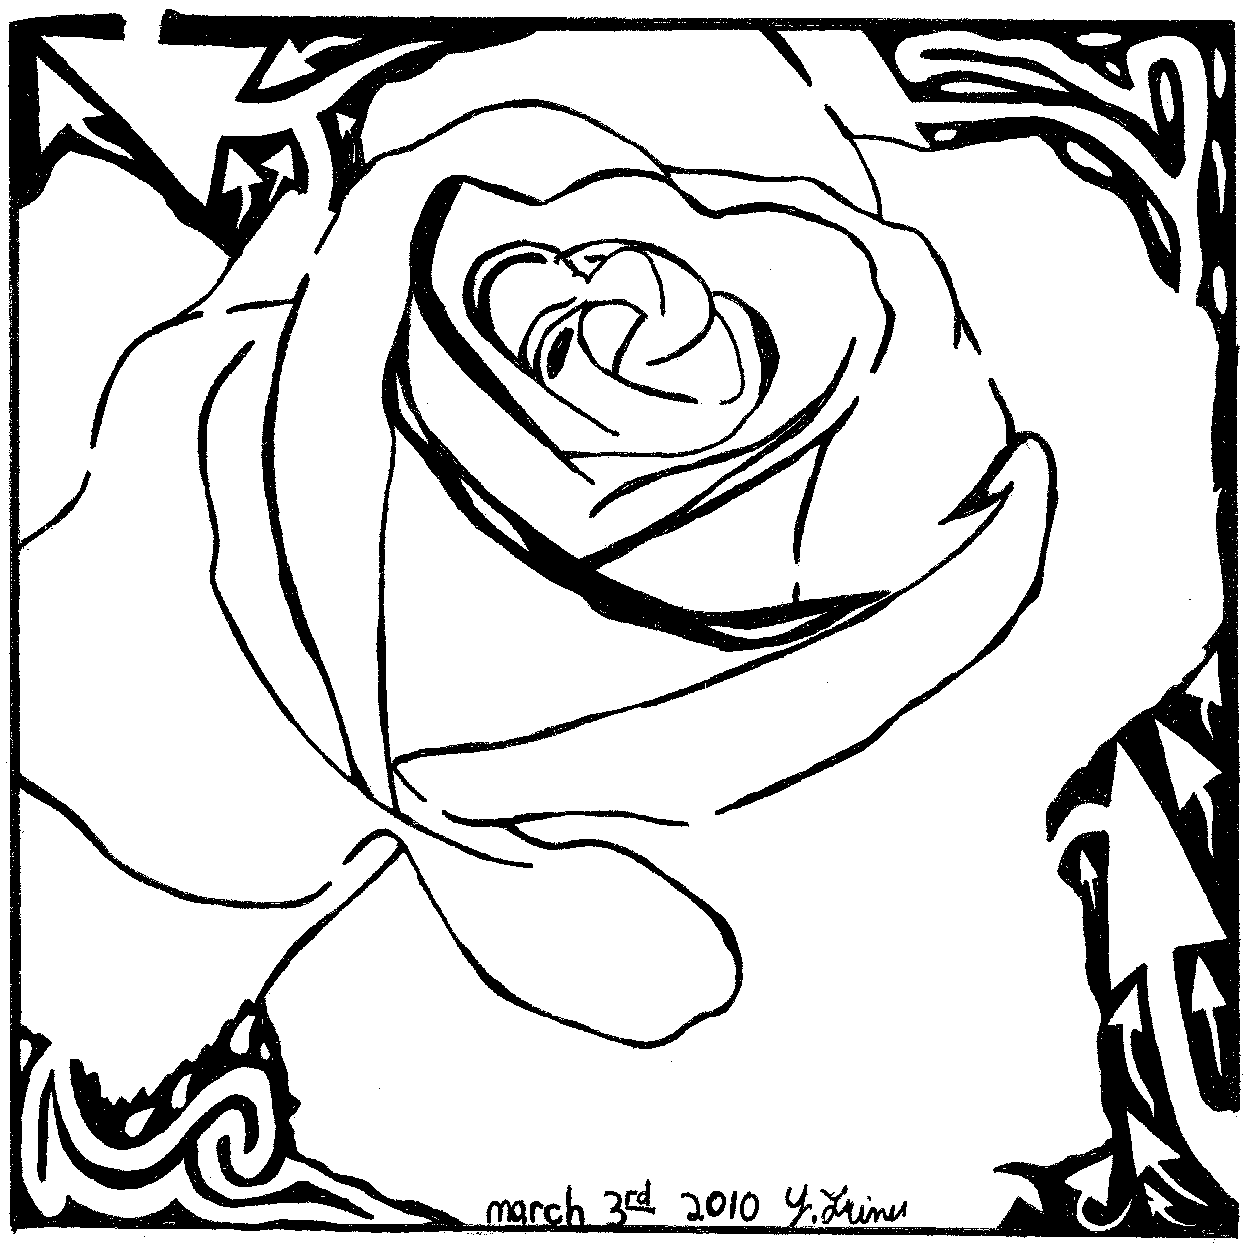 Maze of a rose